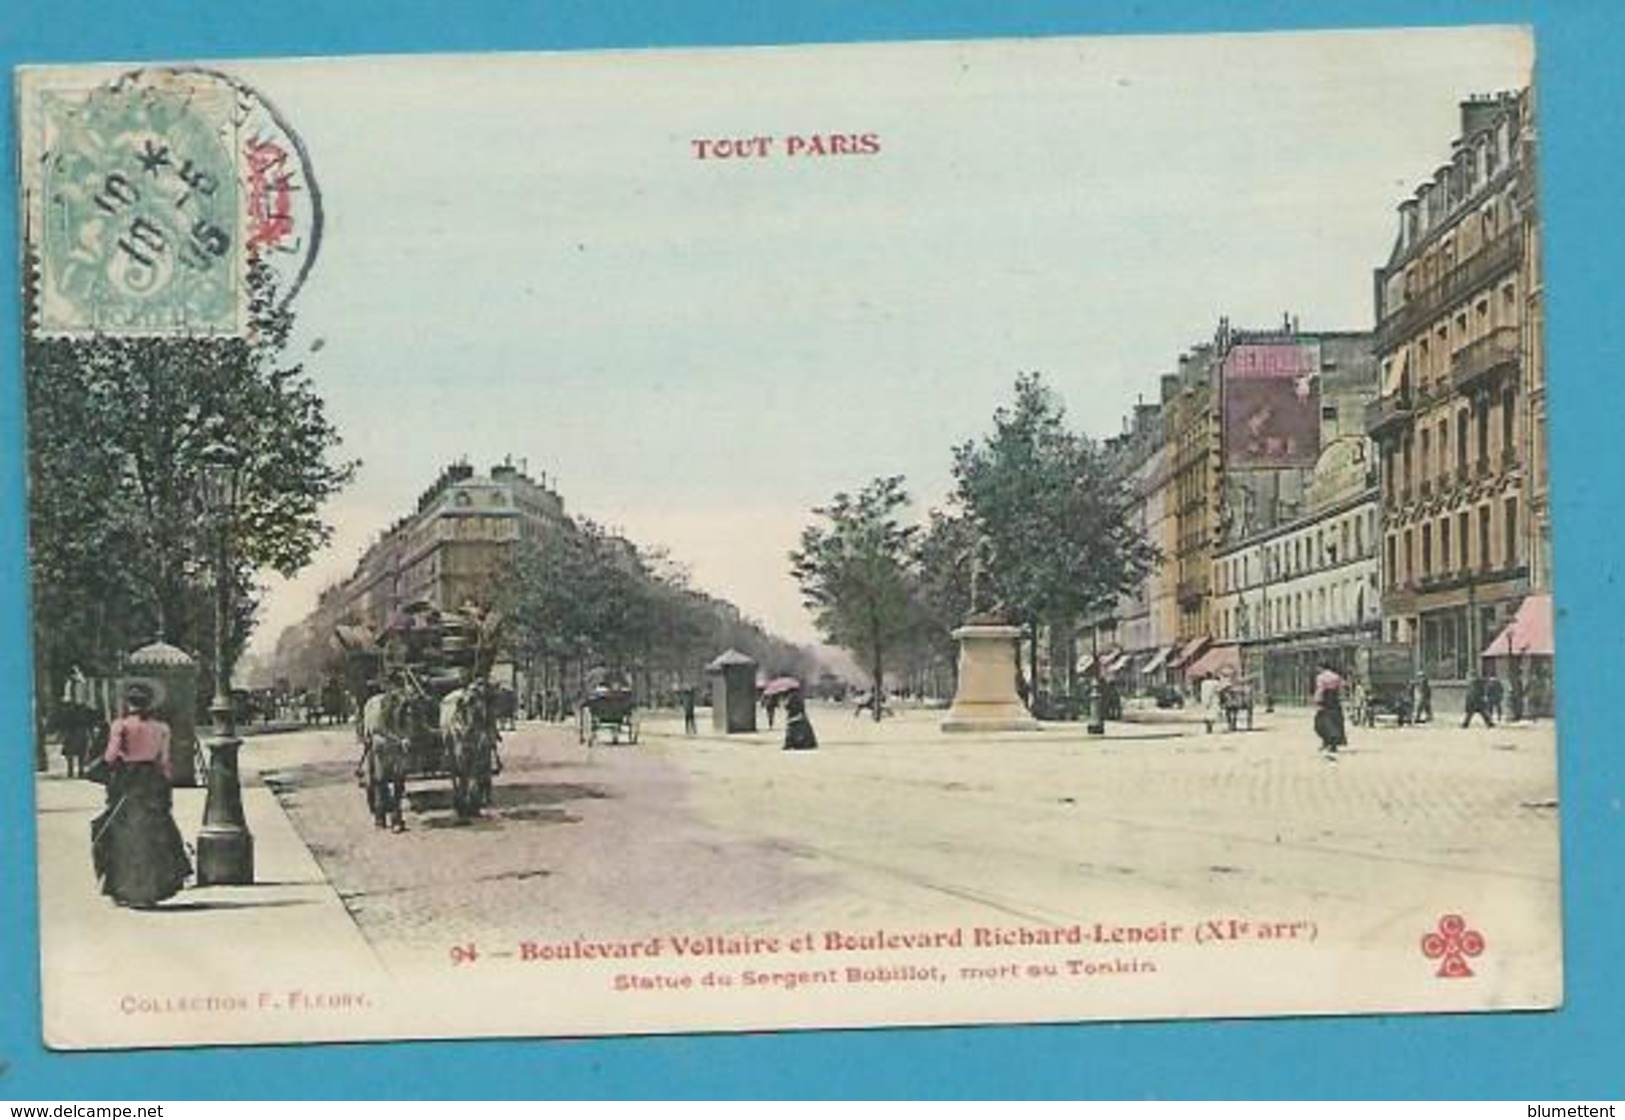 CPA TOUT PARIS 94 - Boulevard Voltaire Et Richard Lenoir XIème Arrt. Edition FLEURY - Arrondissement: 11